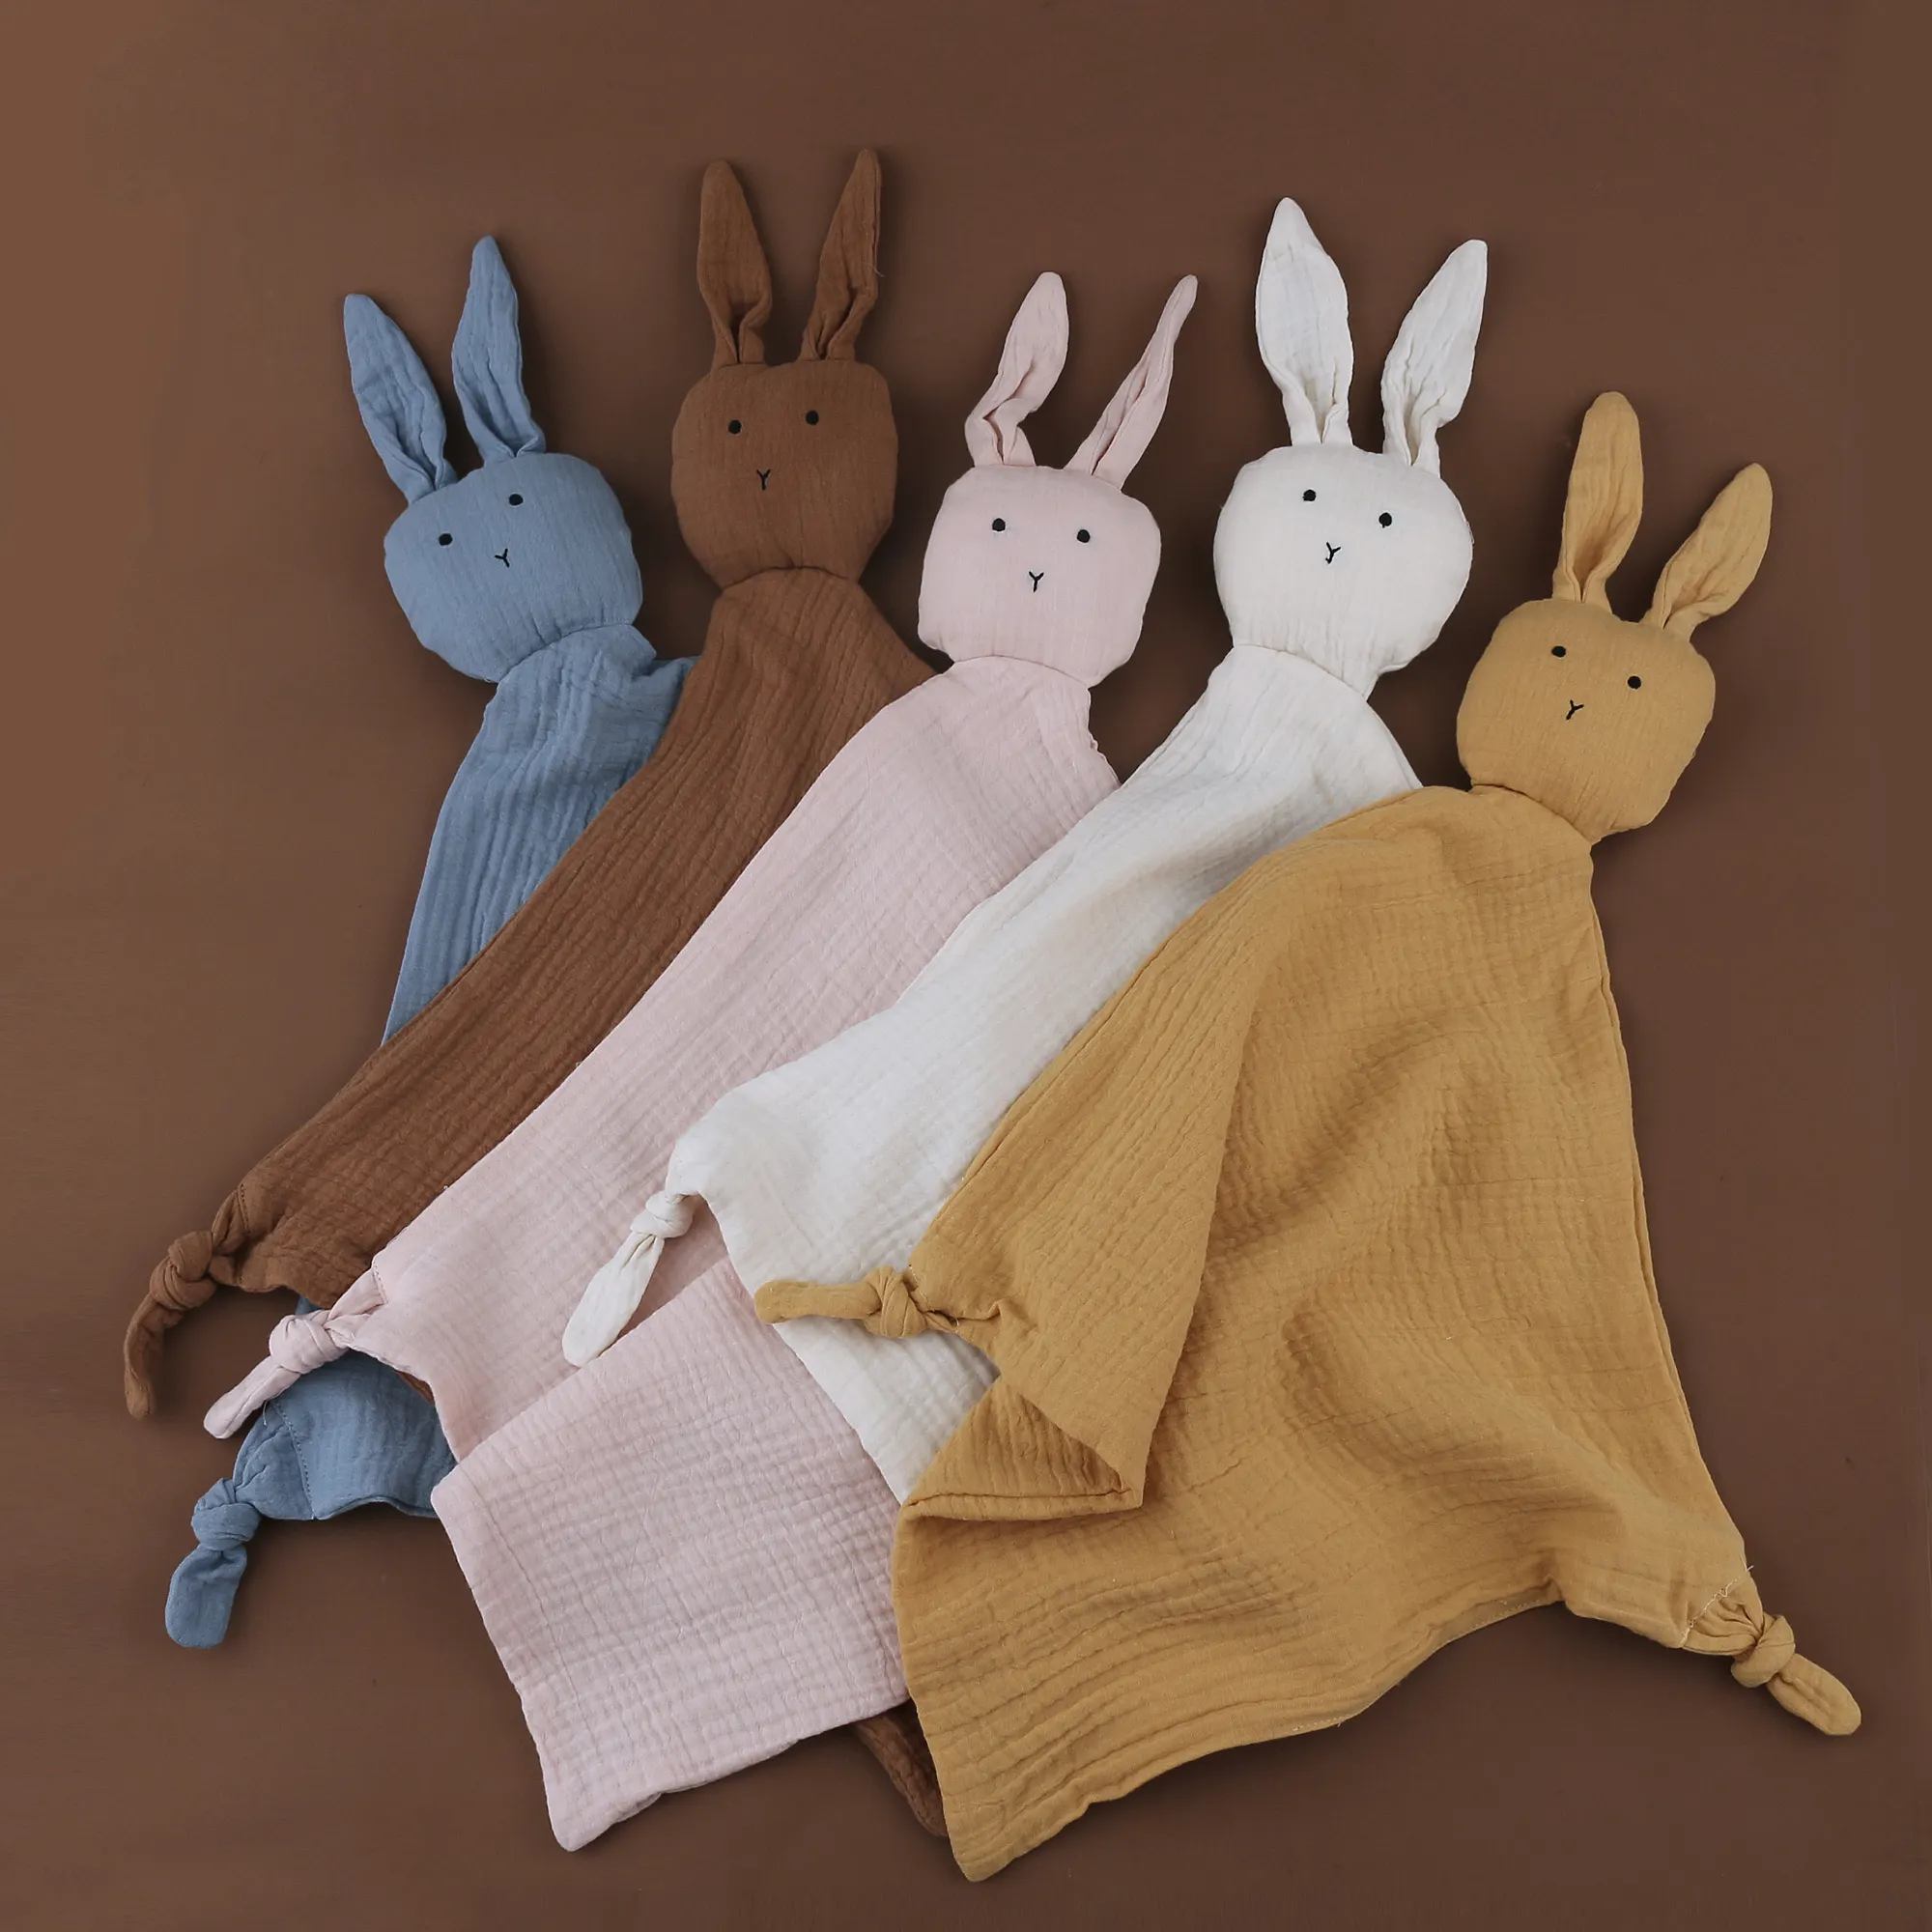 Bán Buôn Hữu Cơ 100% Bông Muslin Vải Comforter Khăn Nhồi Bông Crochet Bunny Nhẹ Nhàng Bé An Ninh Trẻ Em Chăn Đồ Chơi